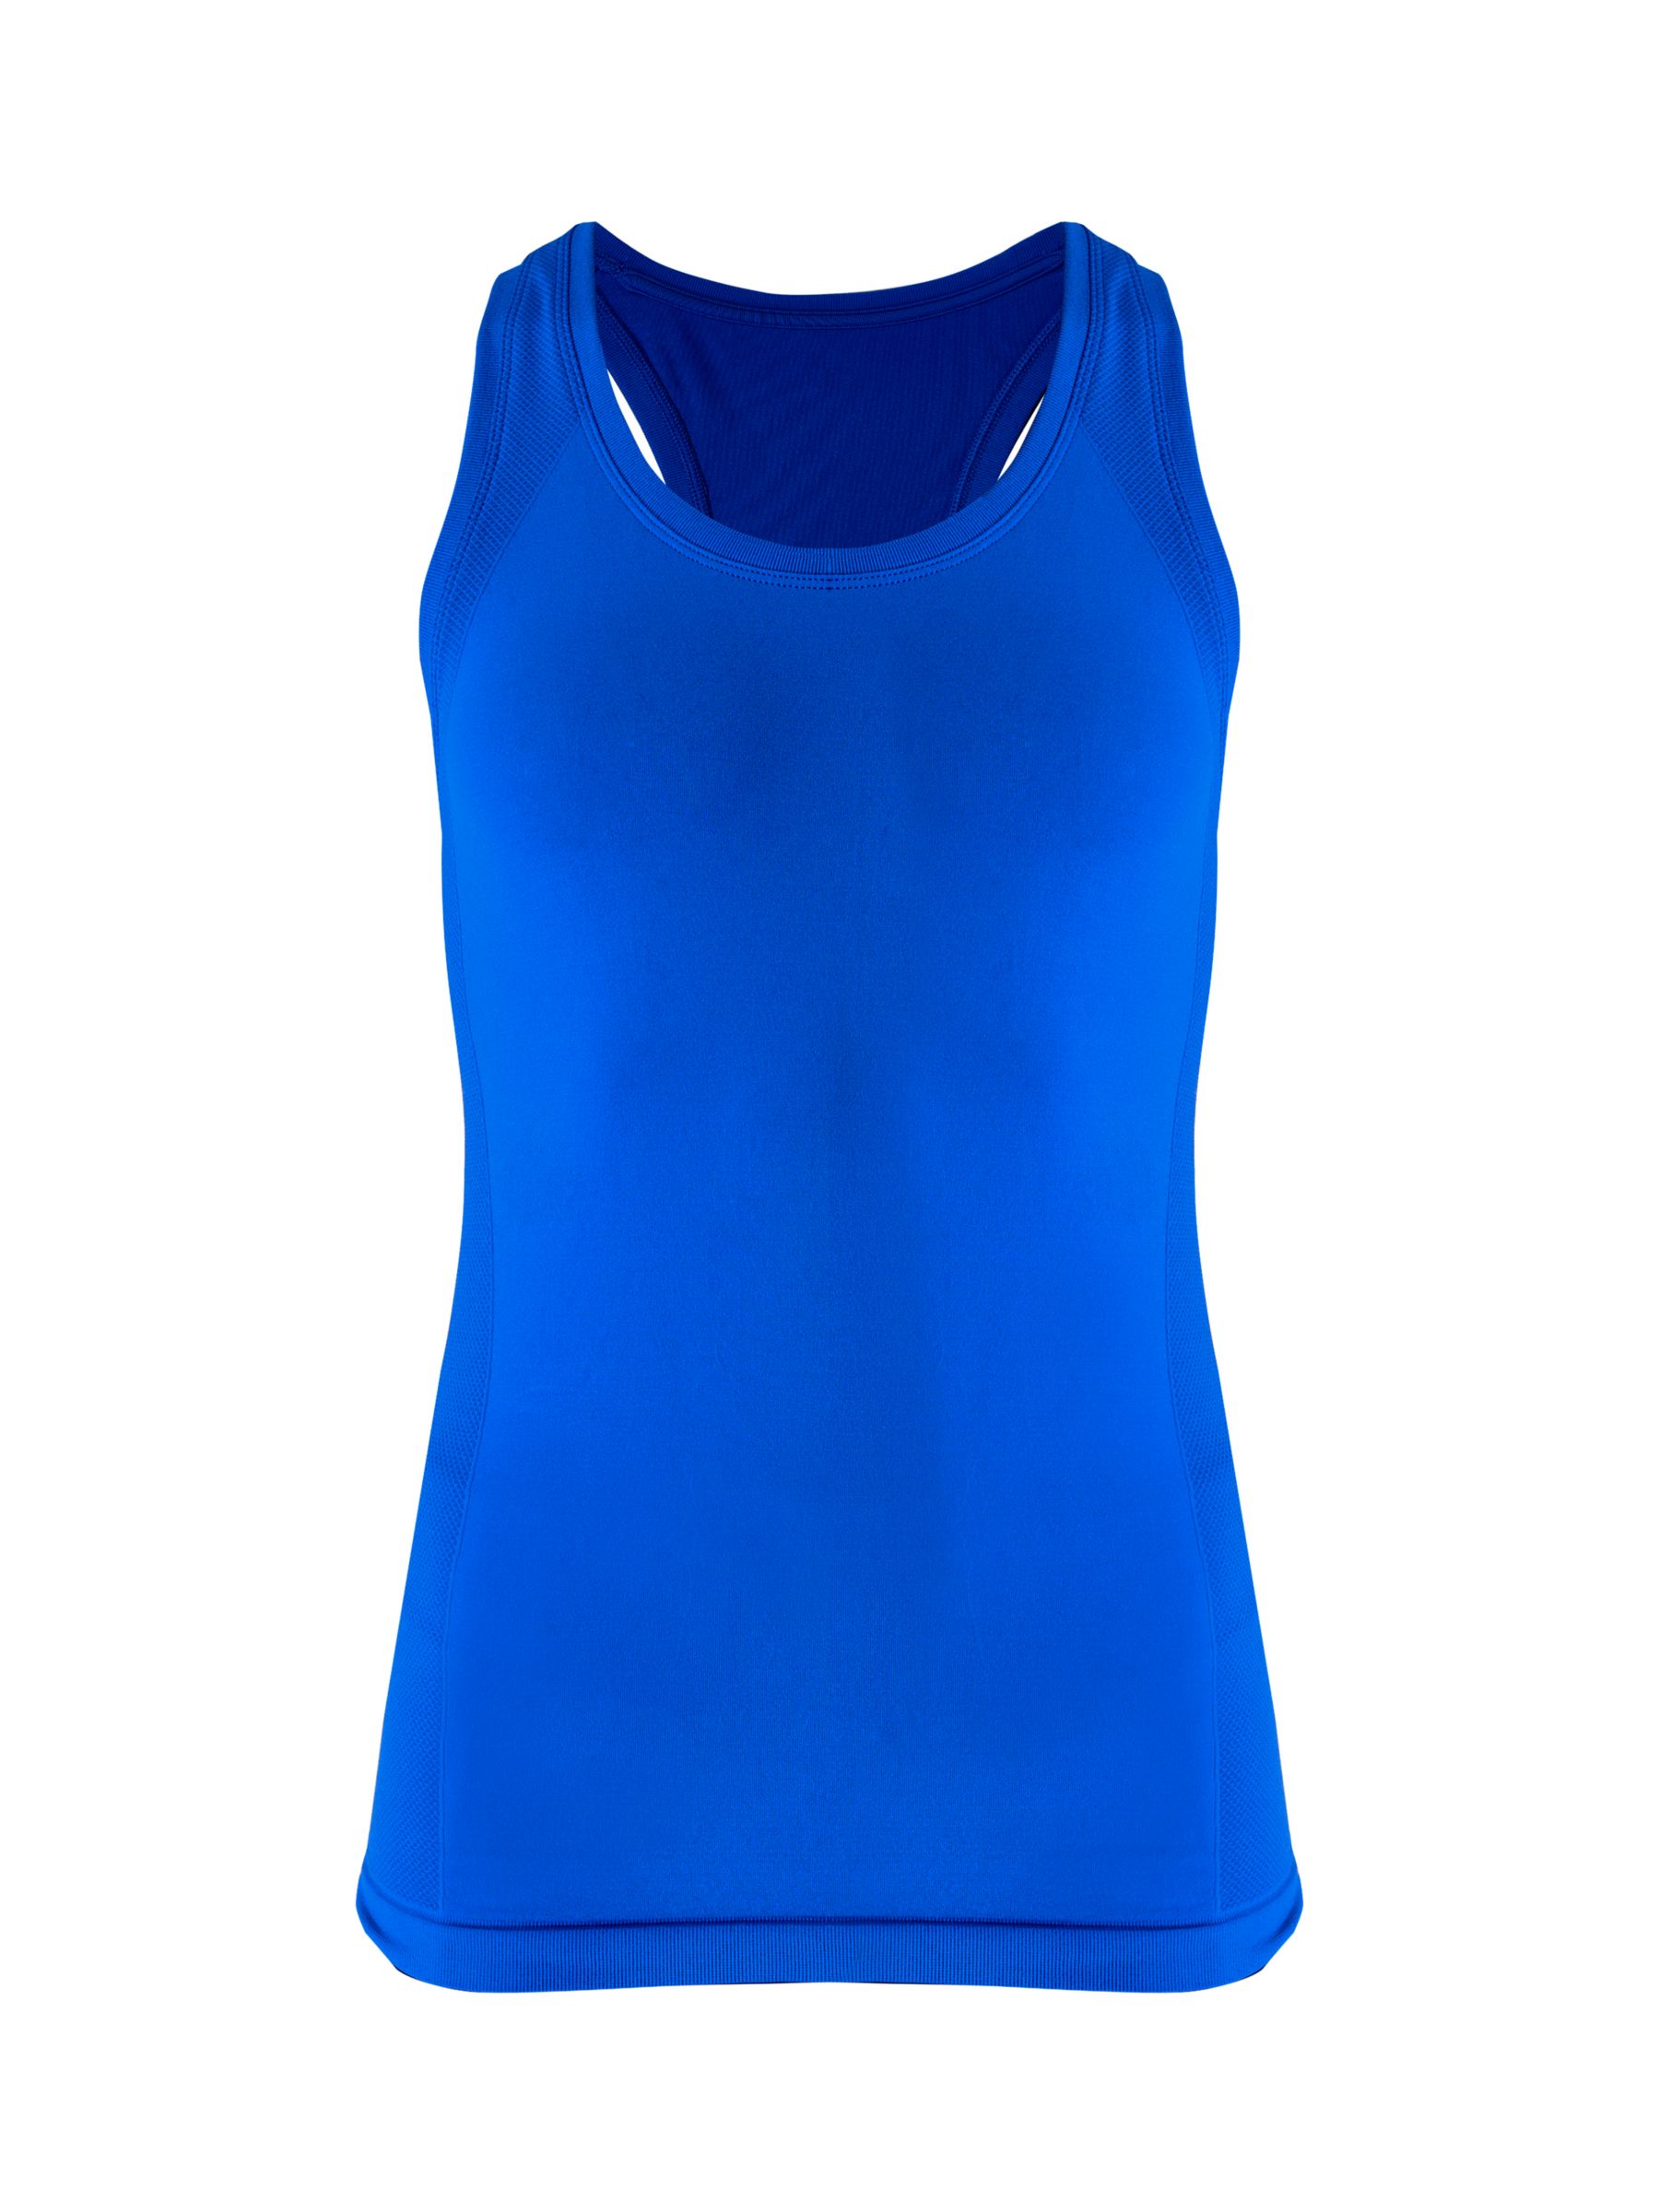 Sweaty Betty Athlete Seamless Workout Tank Top, Lightning Blue, XS